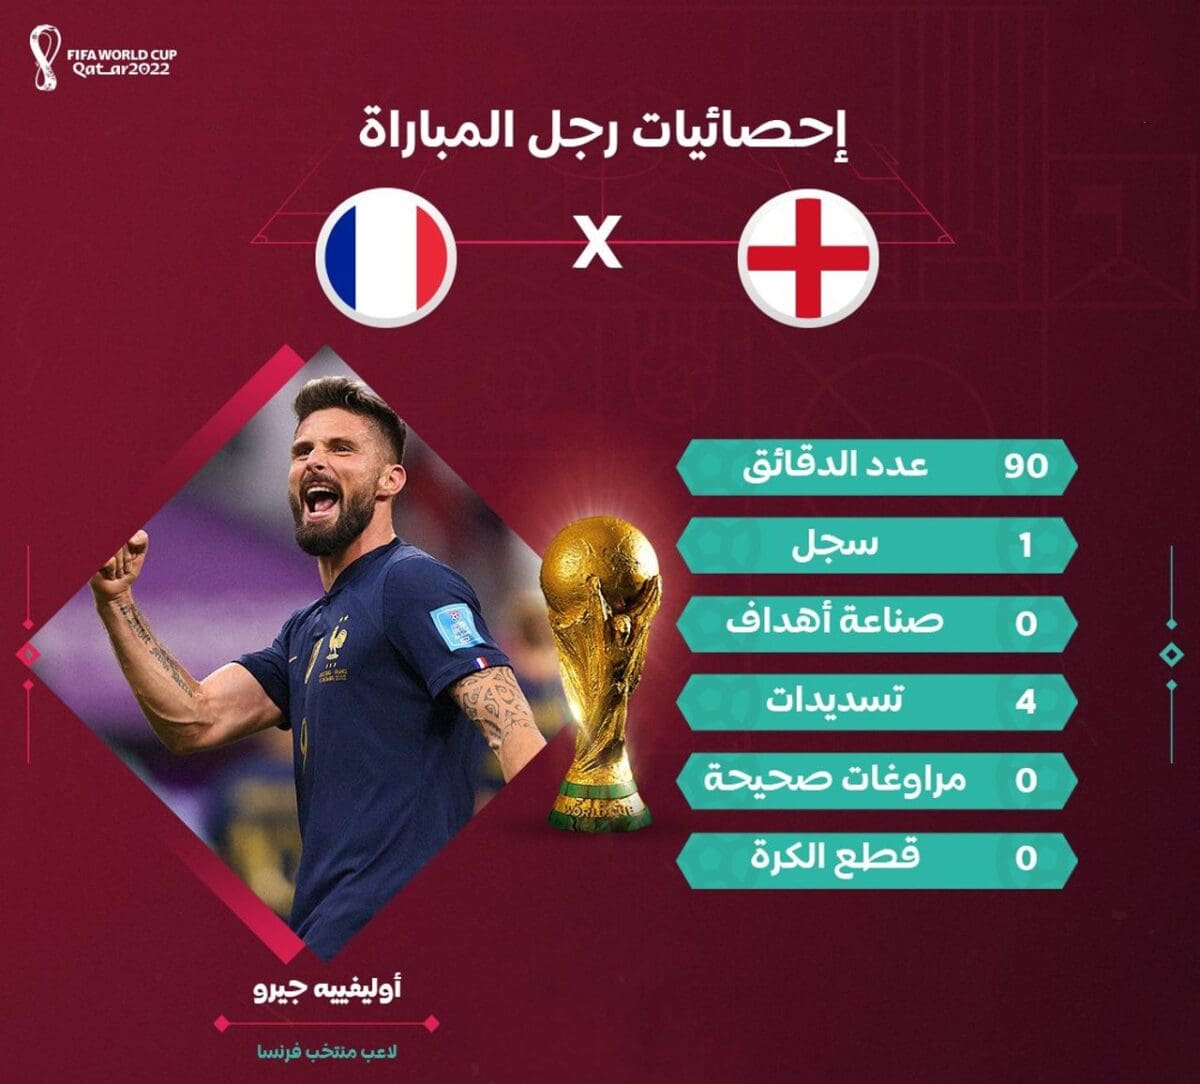 إحصائيات أوليفيه جيرو رجل مباراة فرنسا وإنجلترا في ربع نهائي مونديال قطر 2022